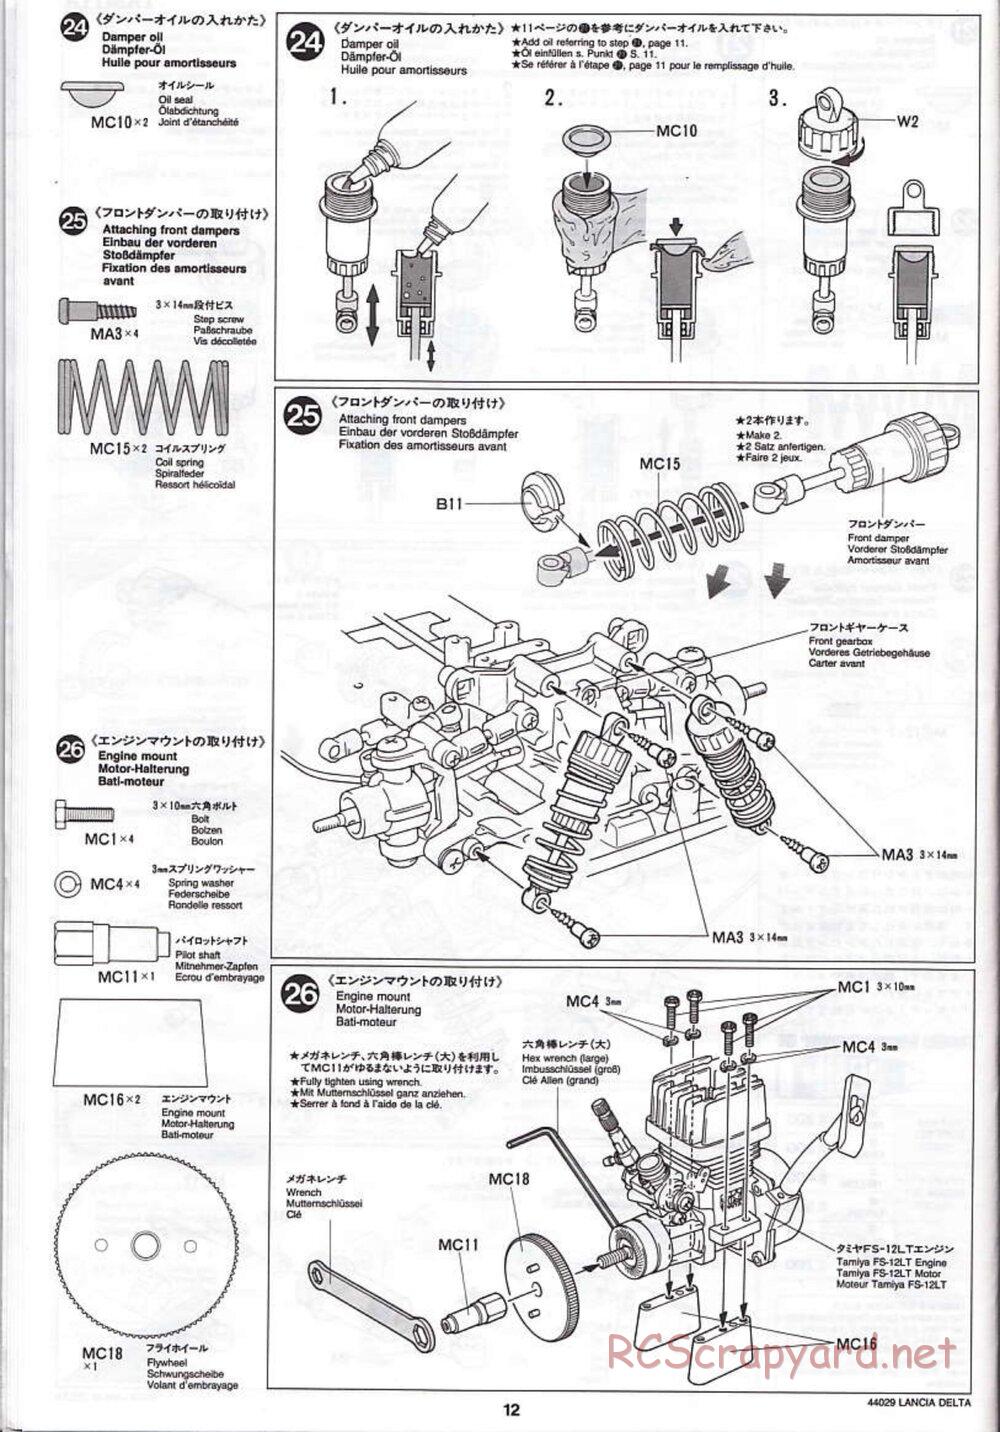 Tamiya - Lancia Delta HF Integrale - TG10 Mk.1 Chassis - Manual - Page 12